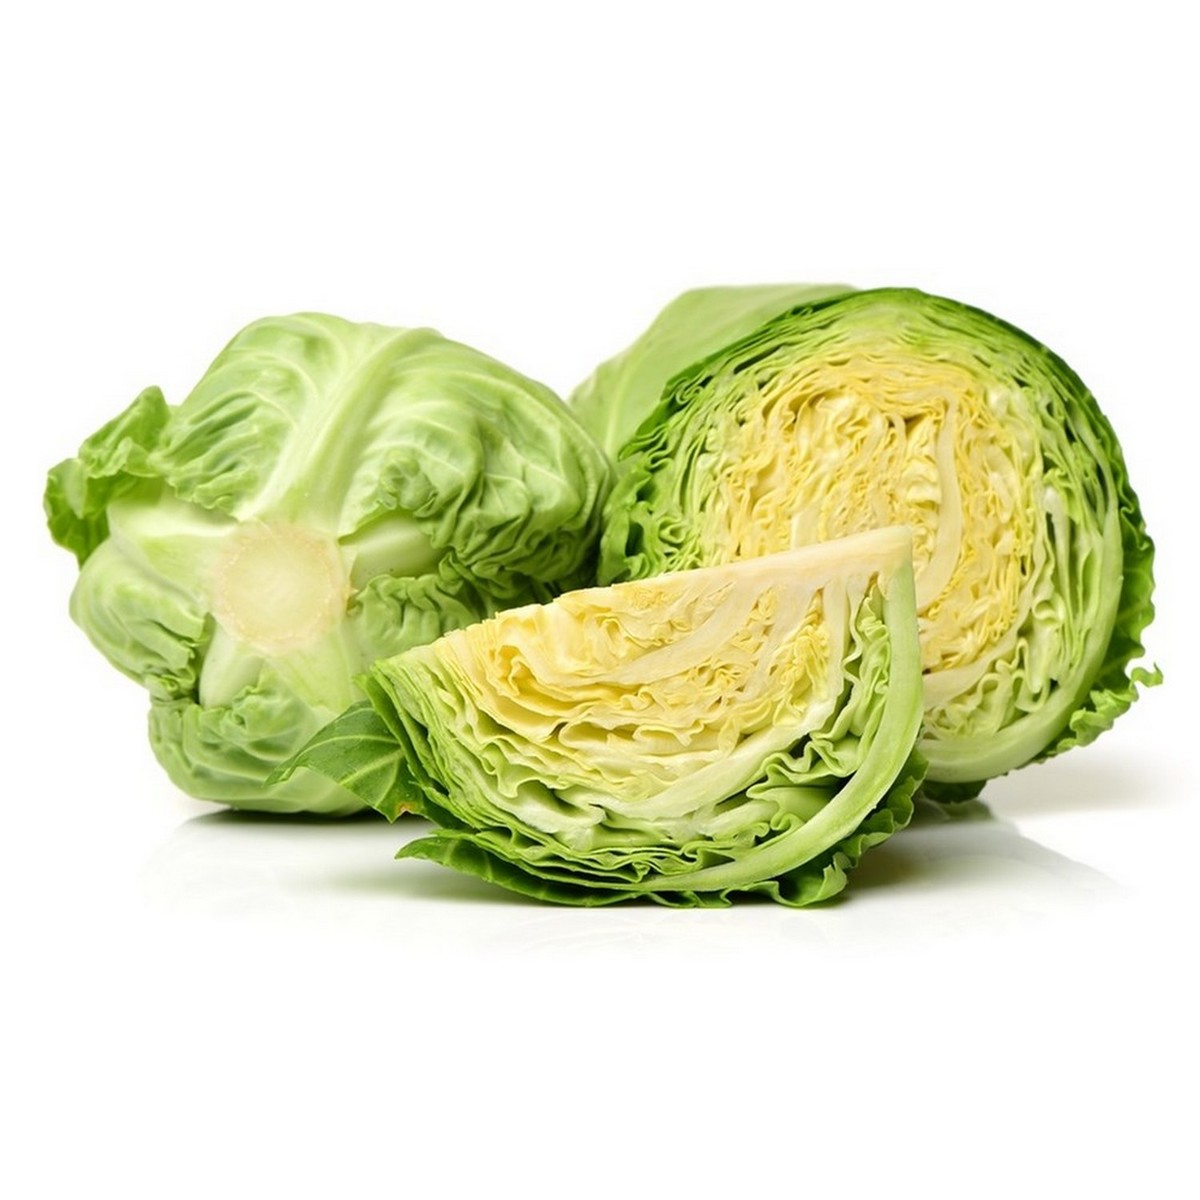 Buy Cabbage Box 1.5kg Online at Best Price | Cabbage | Lulu Kuwait in Kuwait